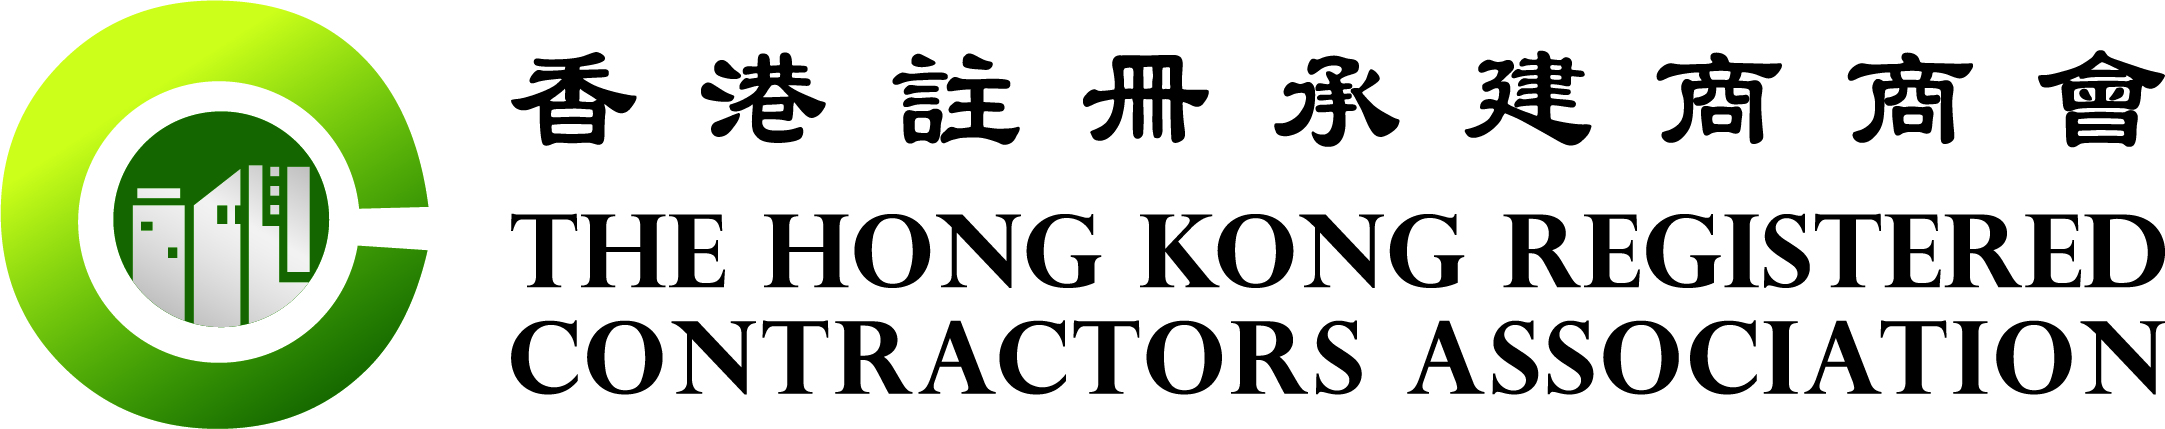 香港註冊承建商商會 Logo 2020